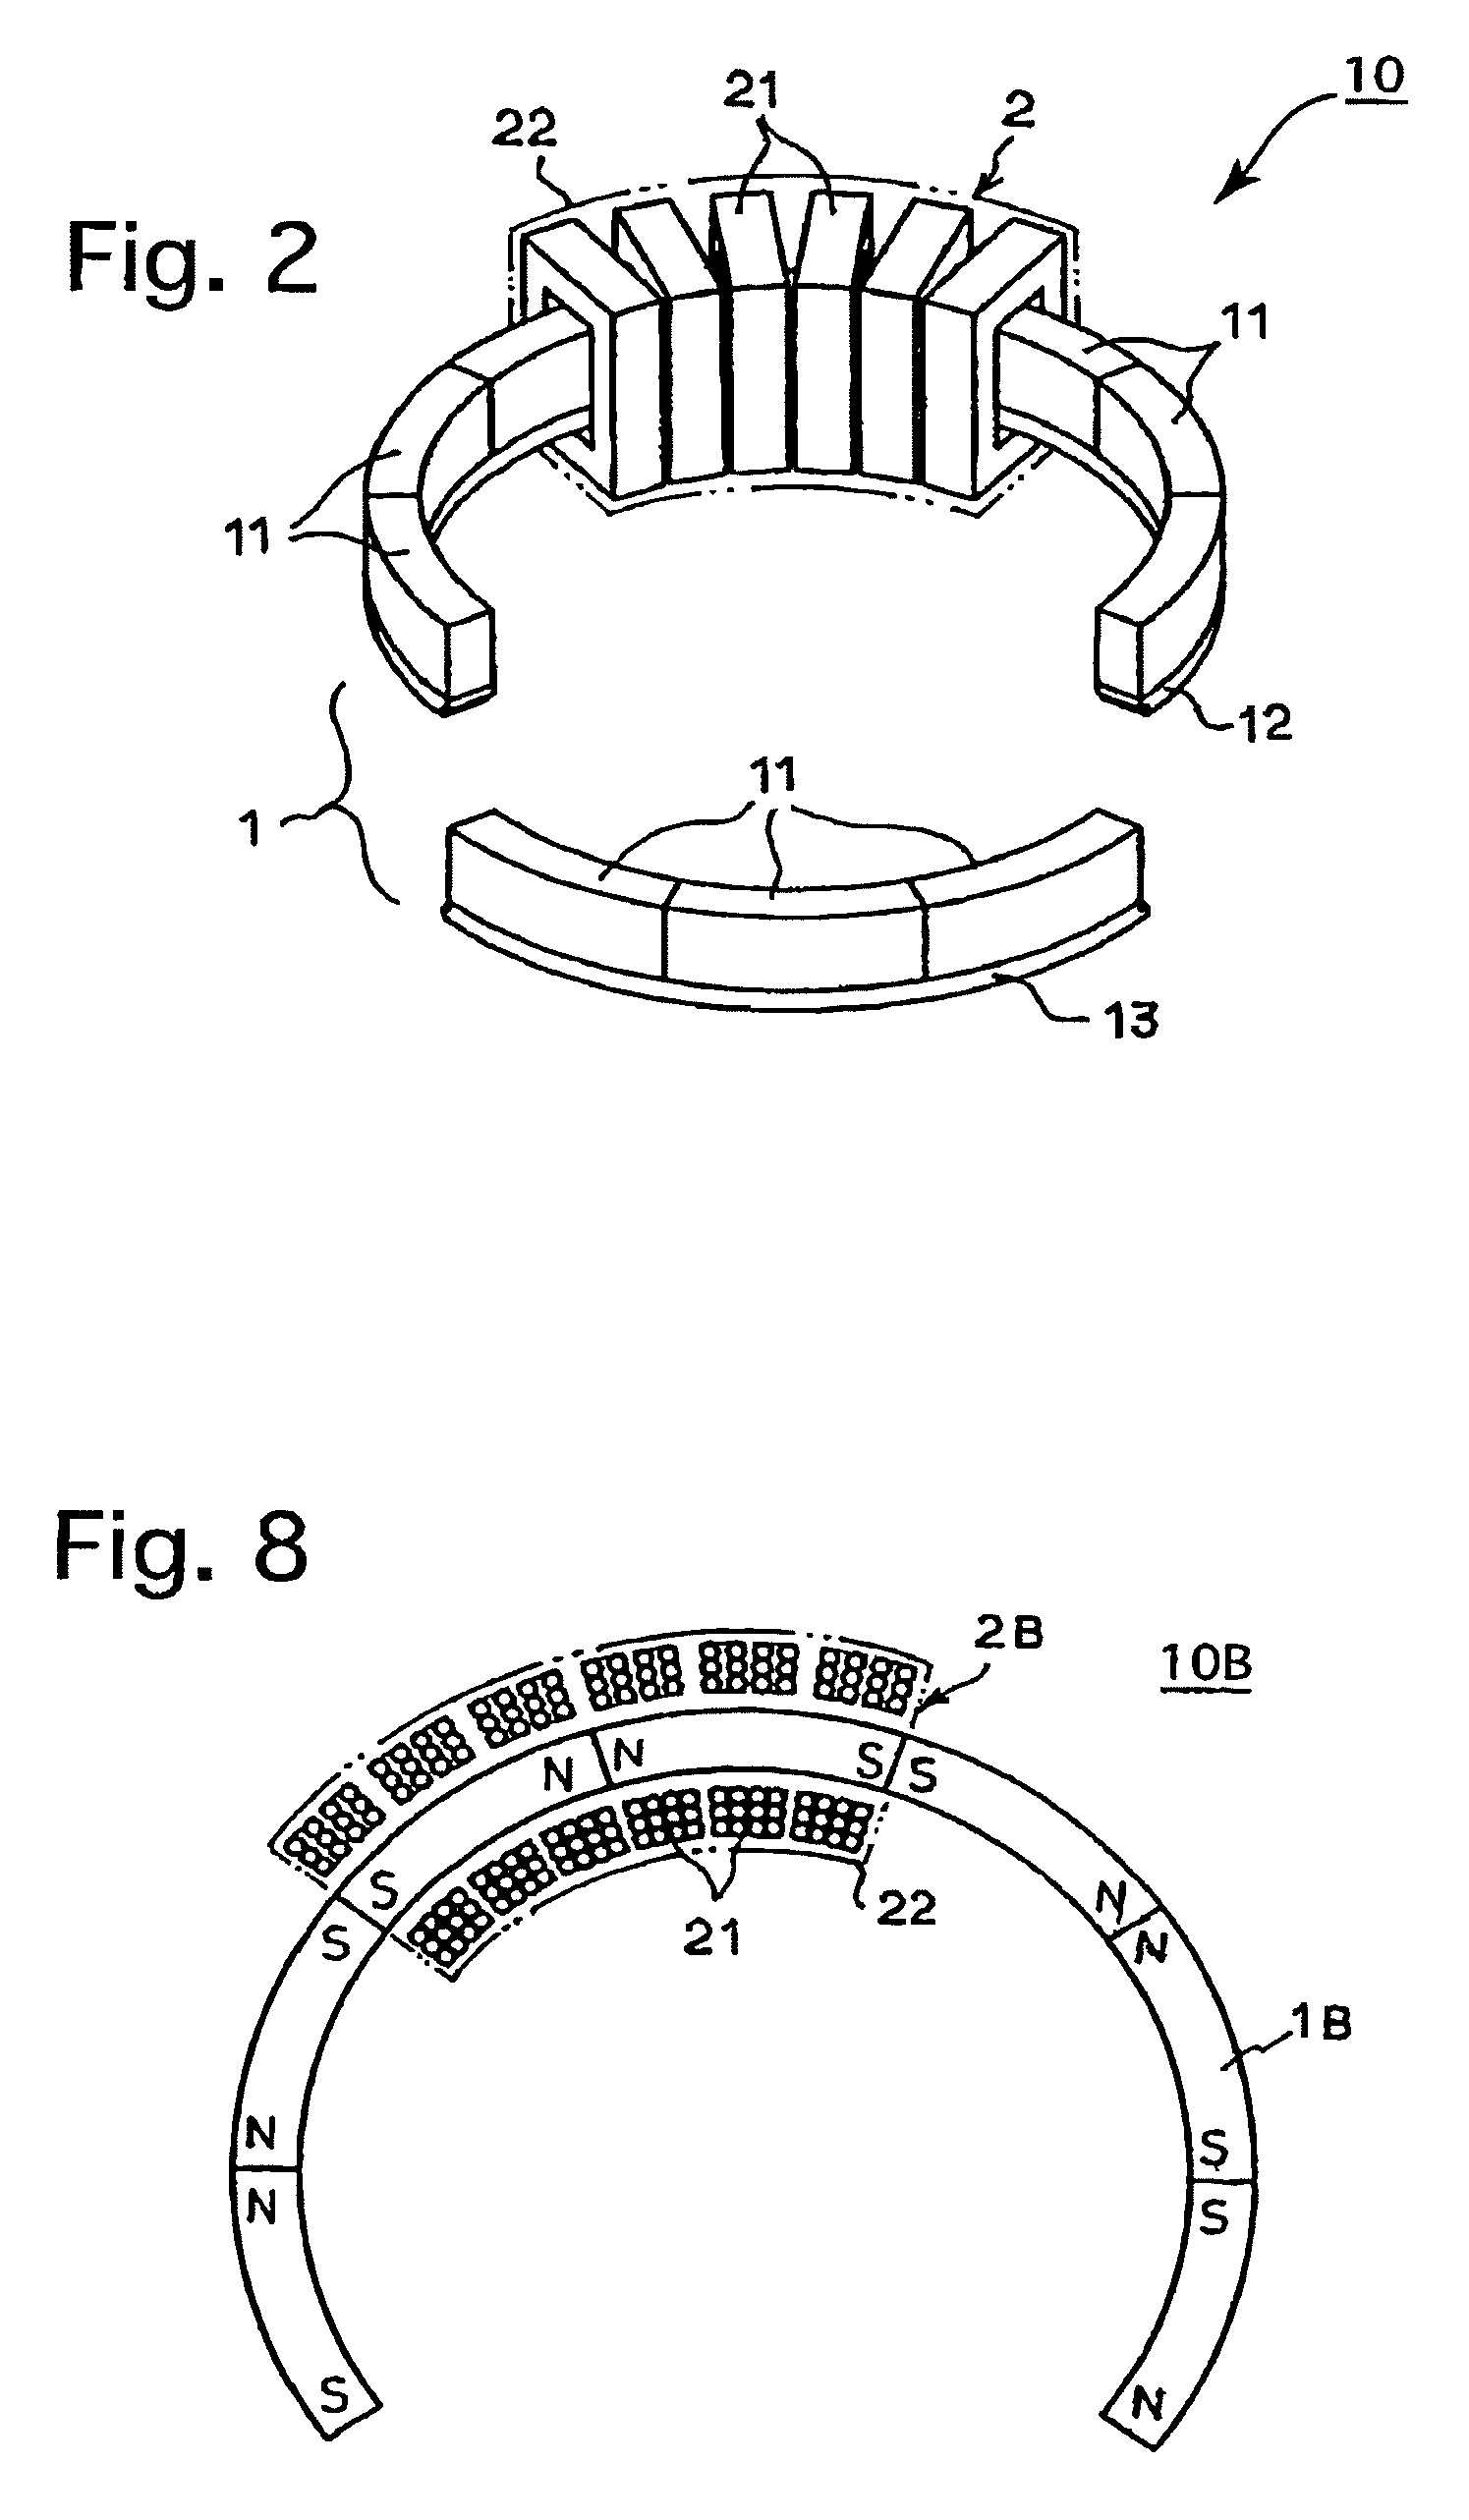 Rotary actuator for auto-focusing a camera lens